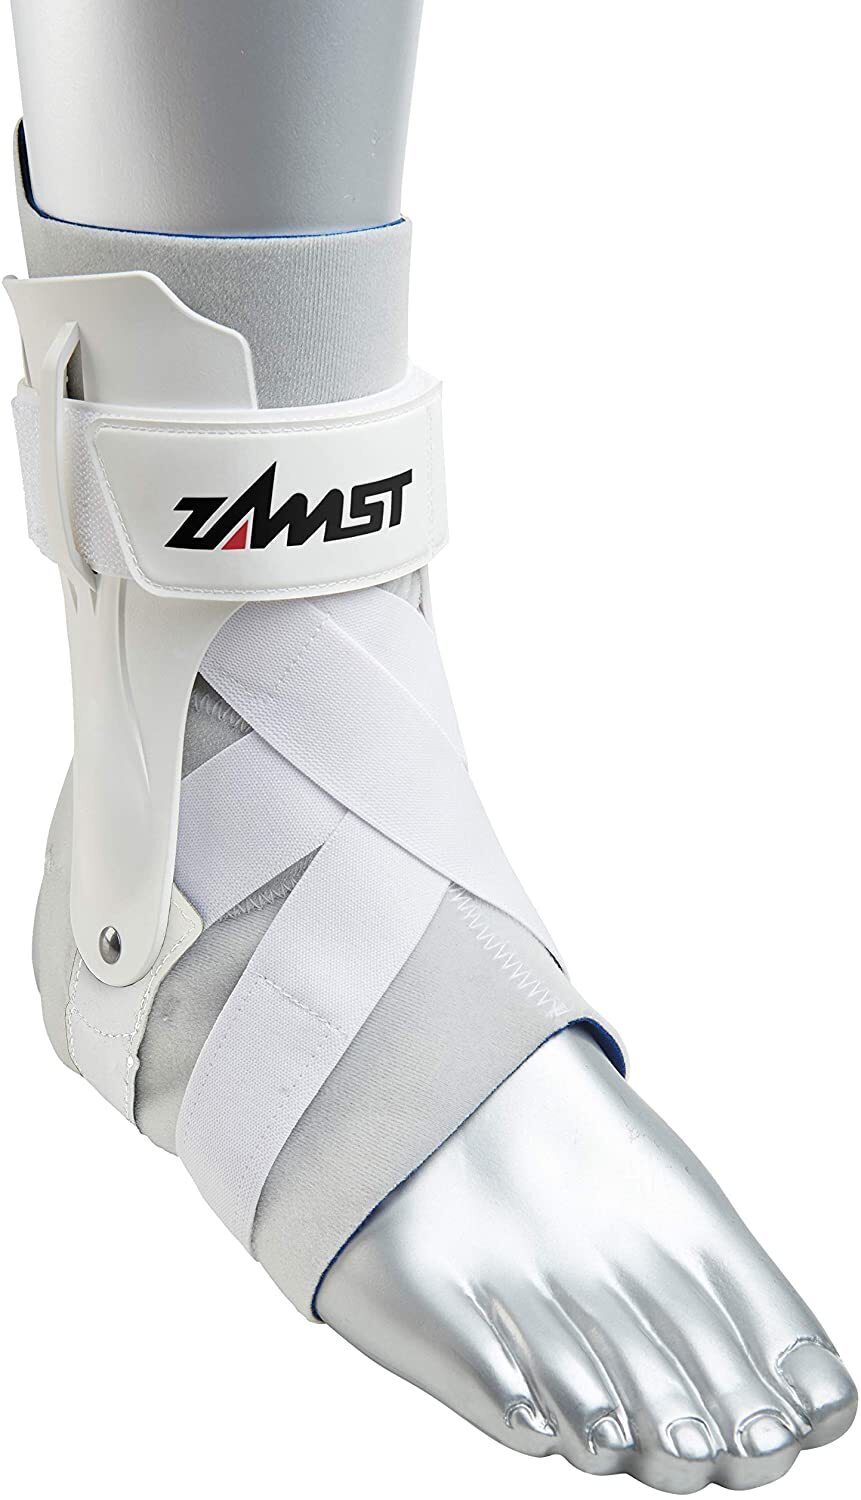 Đai hỗ trợ cổ chân Zamst A2-DX